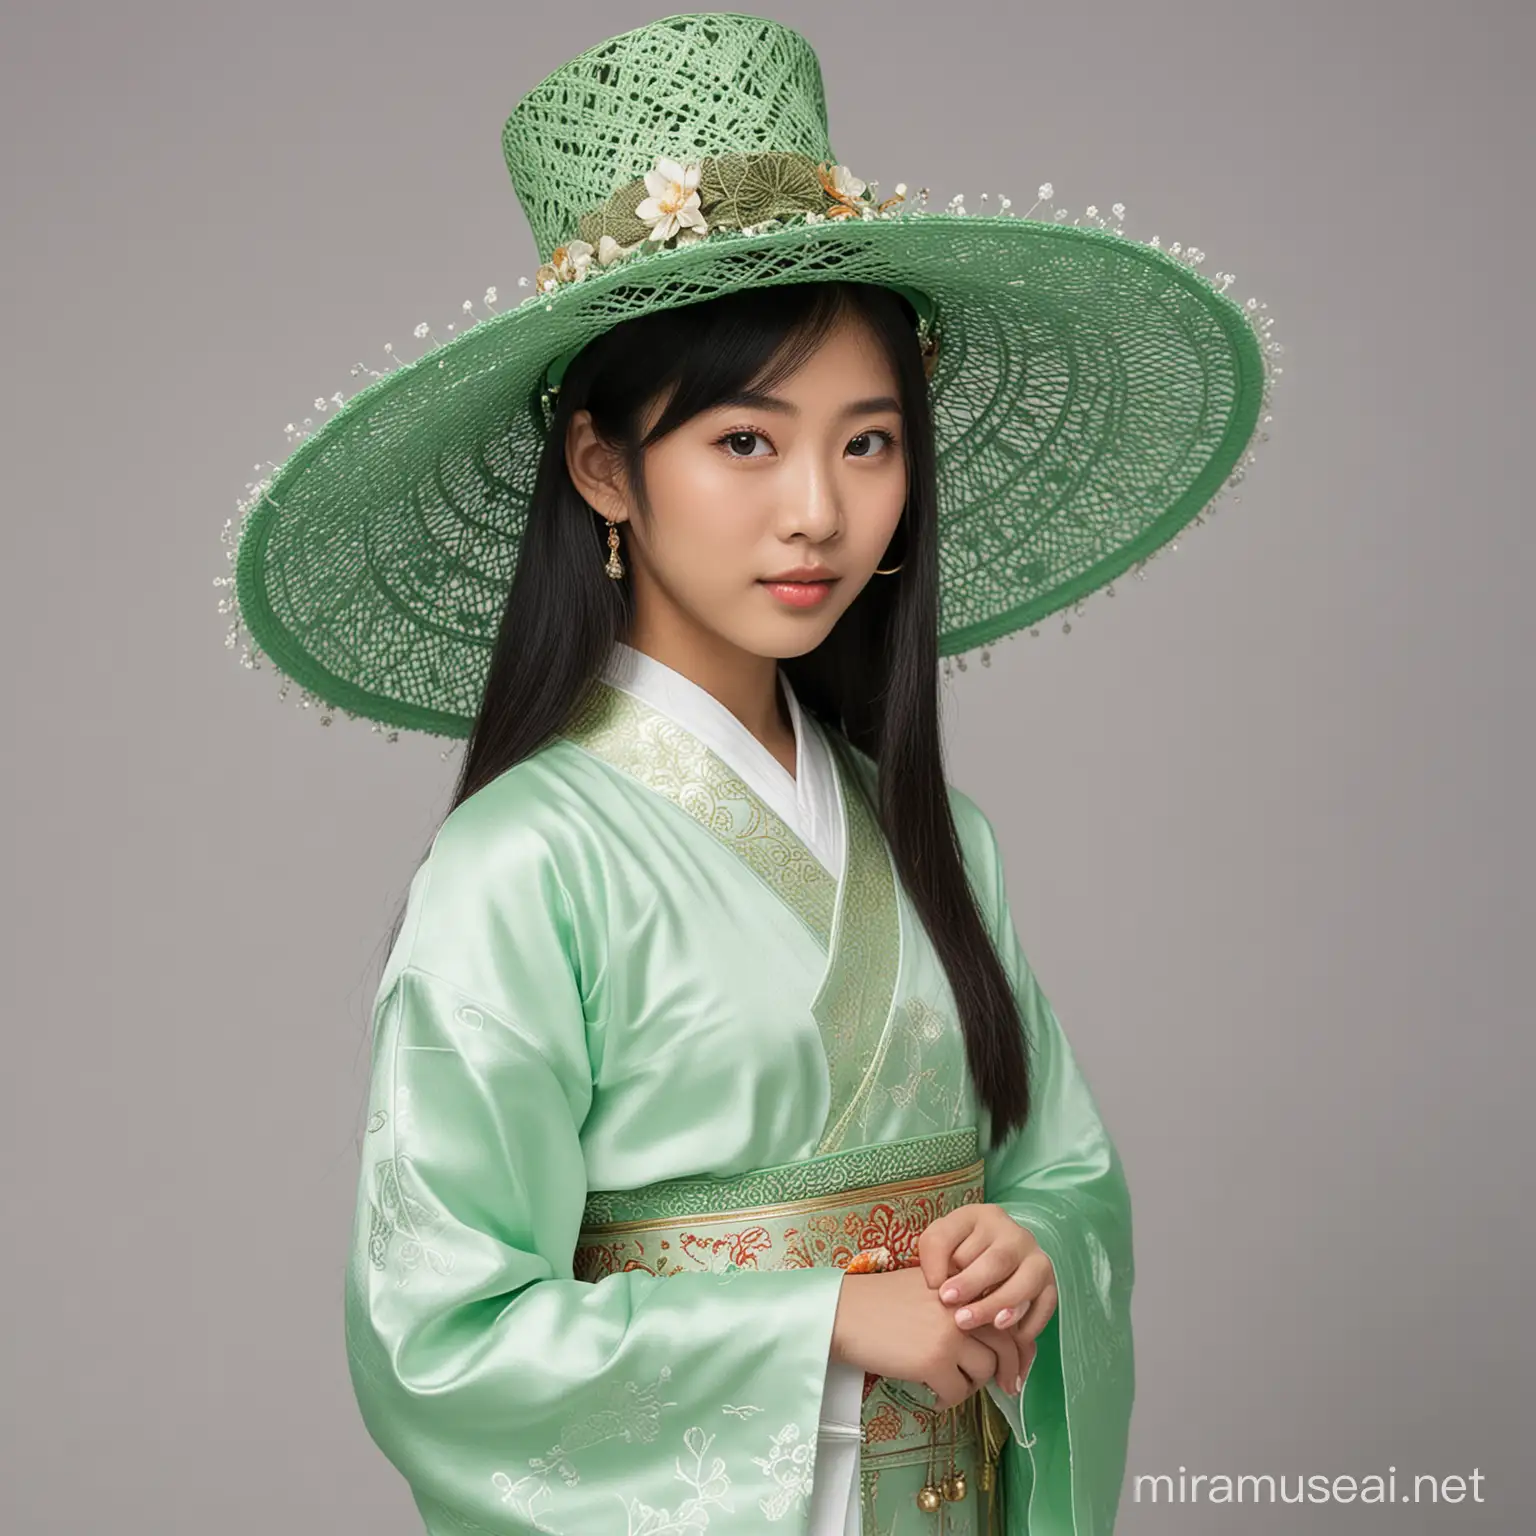 全身像，戴着绿色高帽的亚洲女孩，精致的五官，穿着传统的亚洲服饰